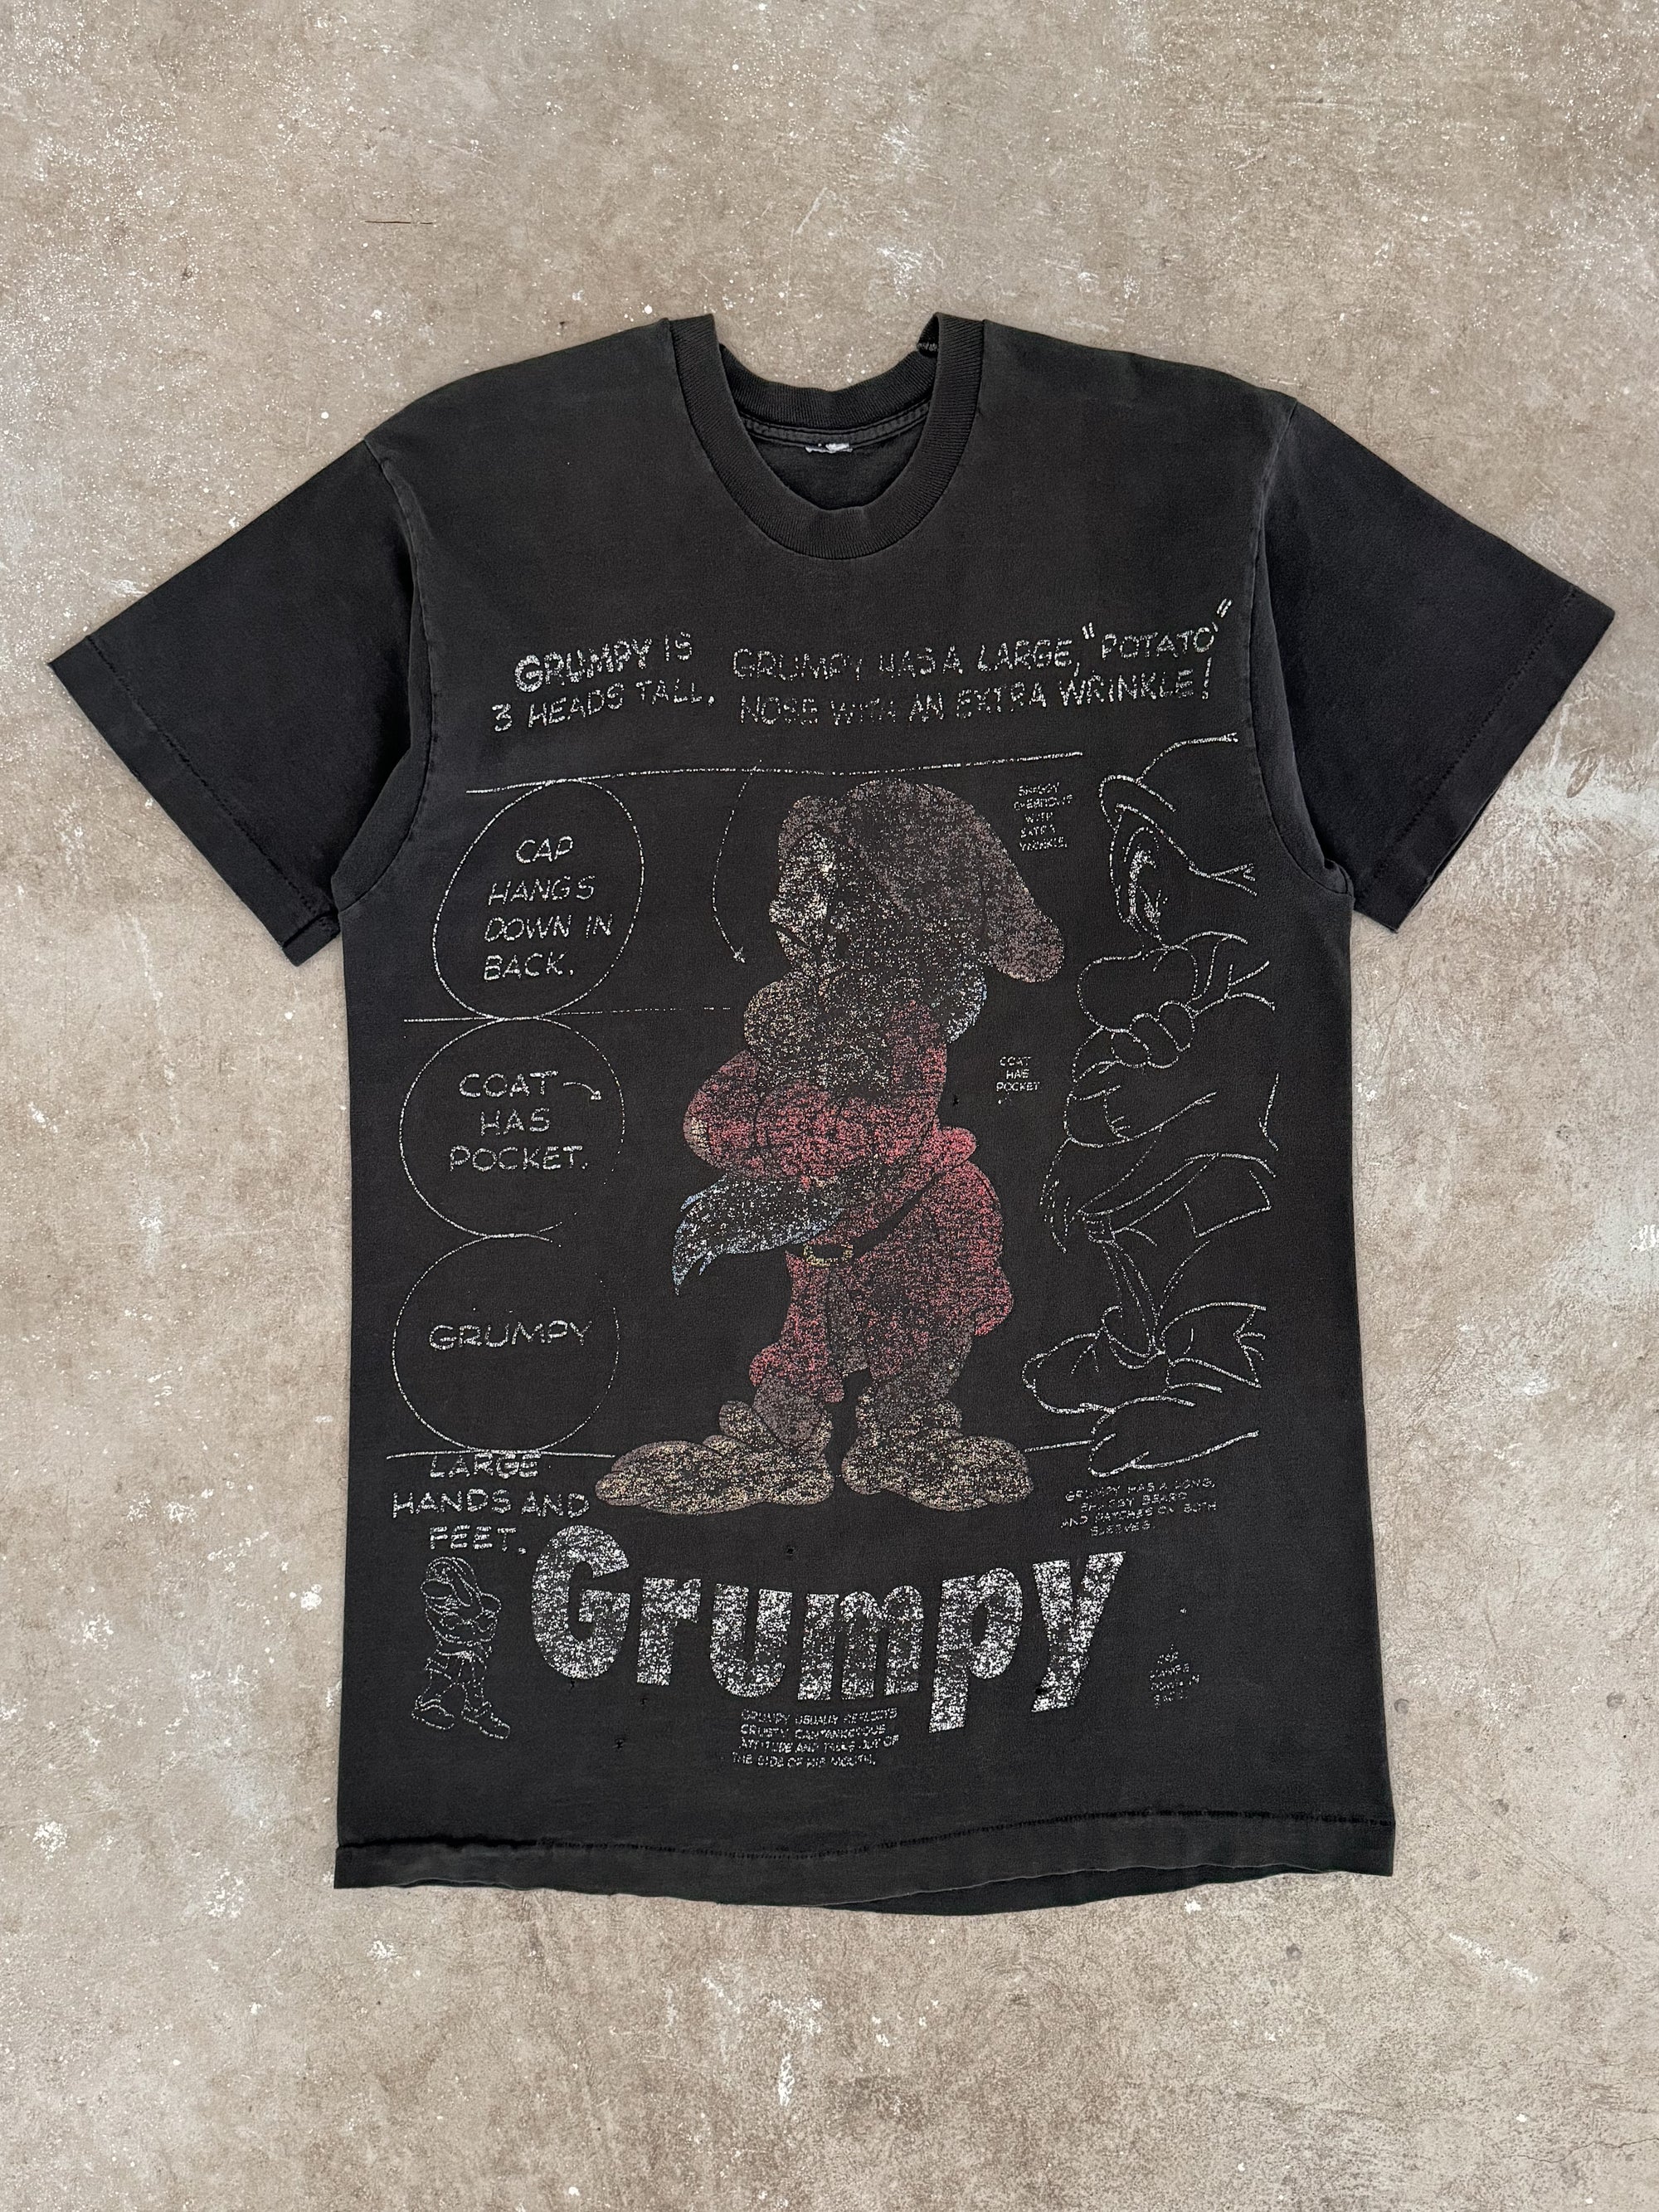 1990s "Grumpy Dwarf" Faded Tee (M/L)